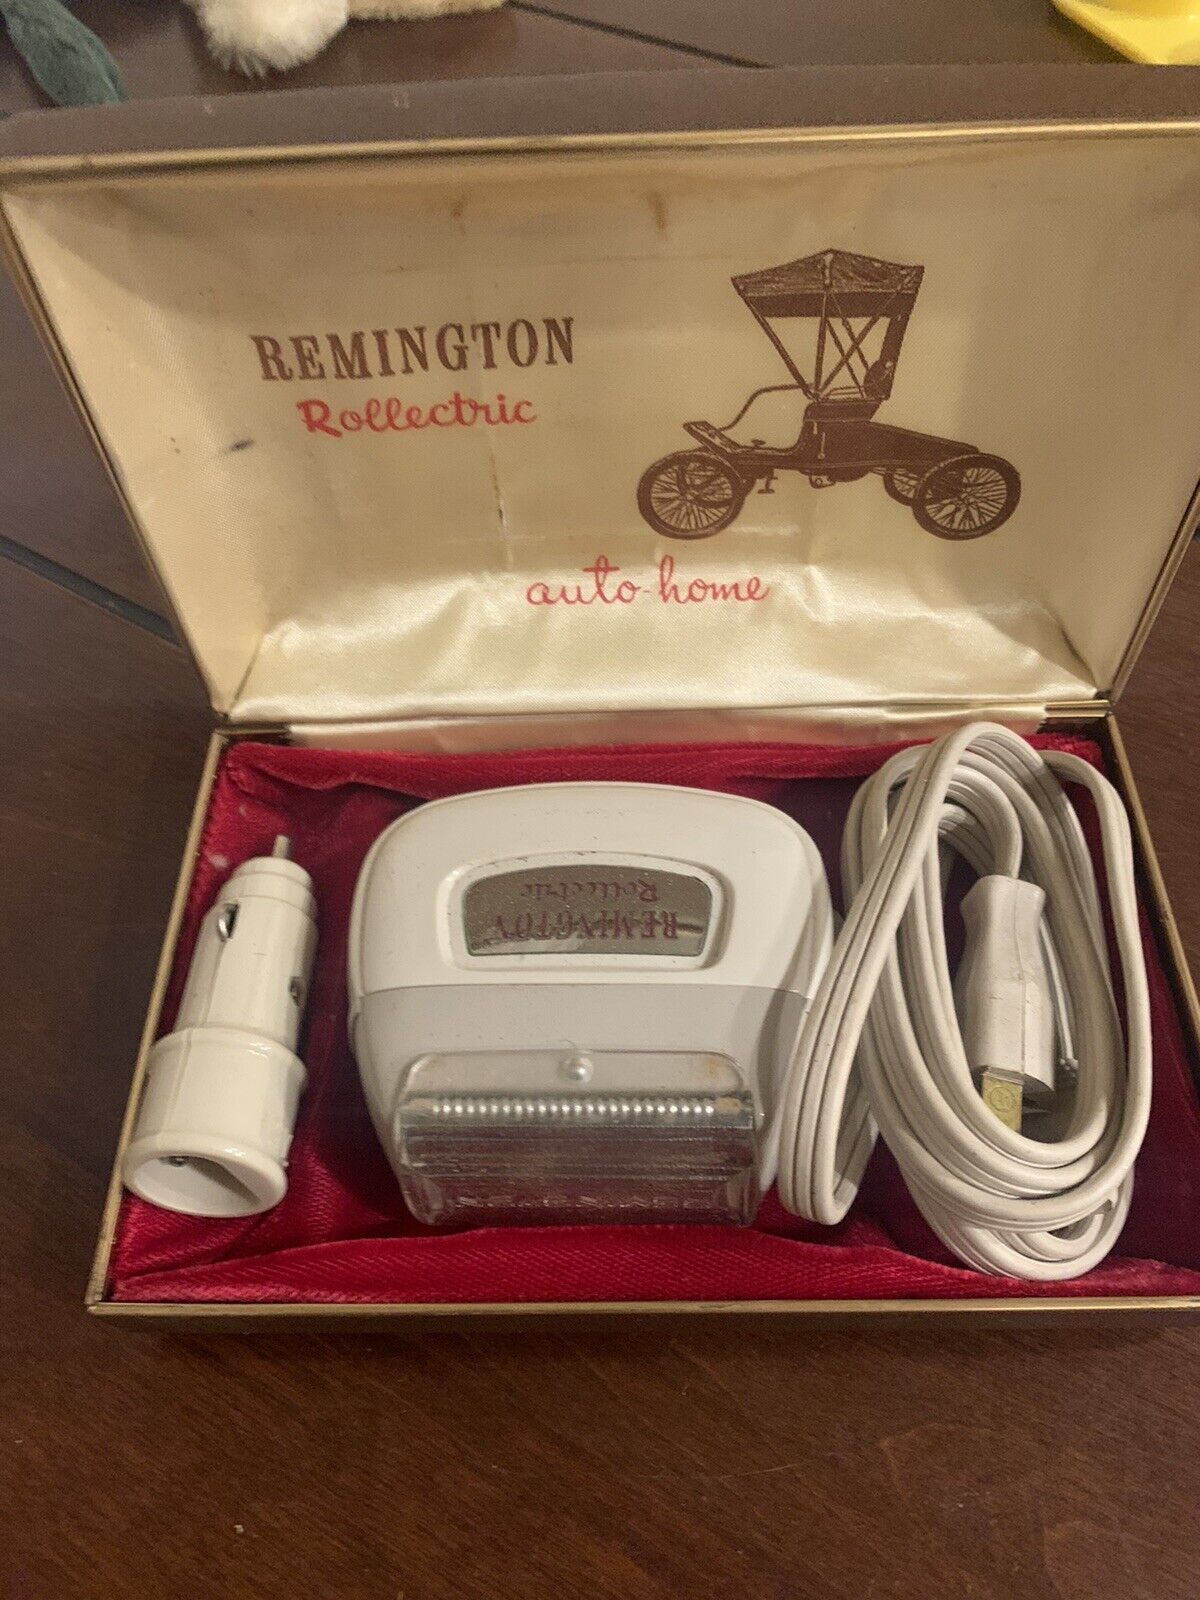 VTG Remington Rollectric 12V 110V Auto Home Electric Shaver Antique Original Box